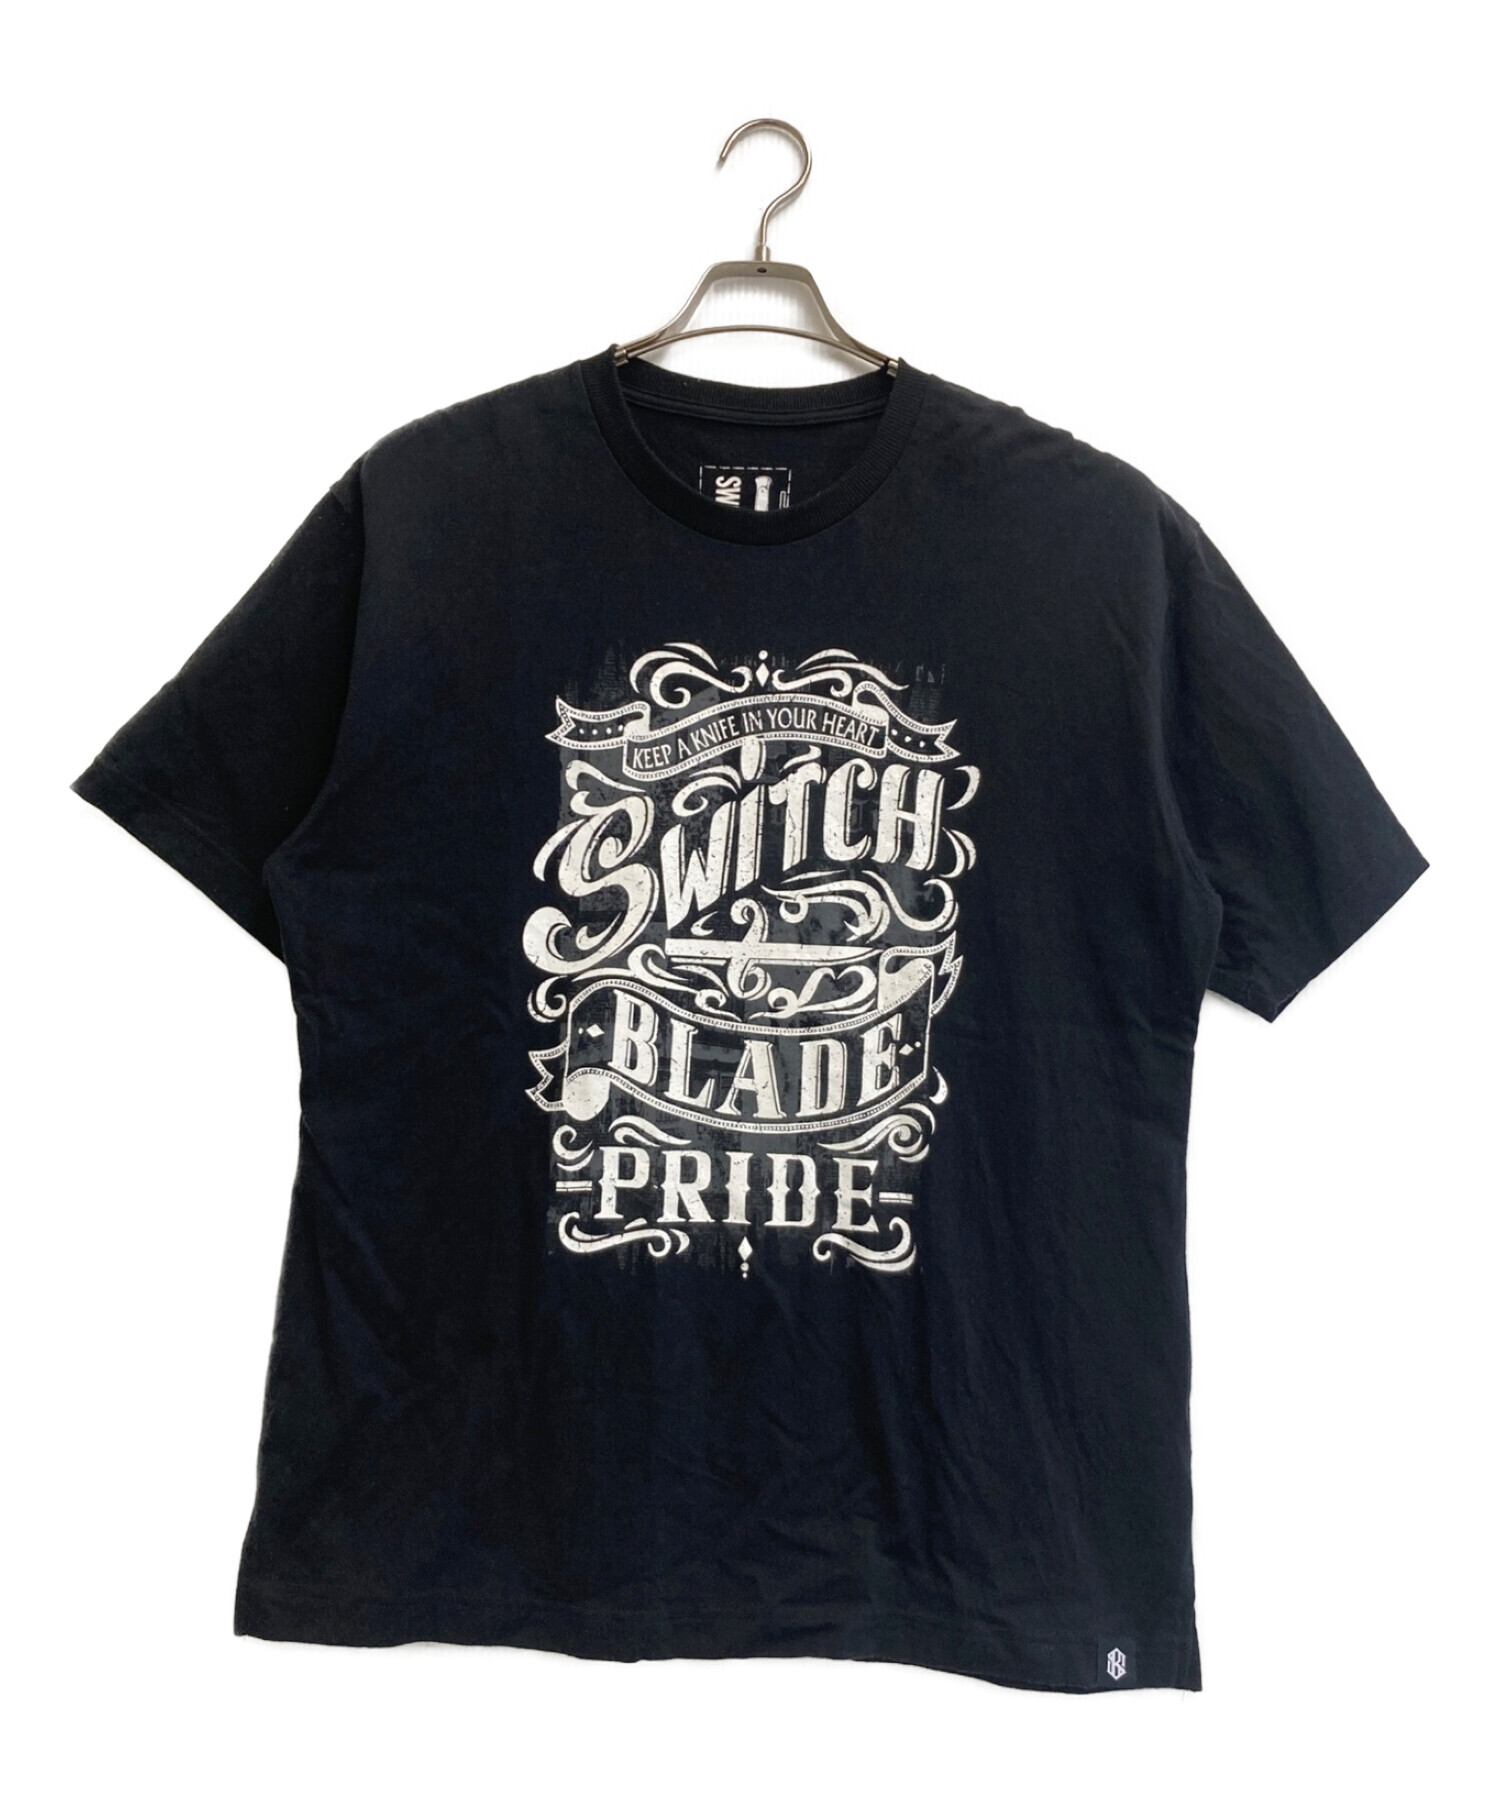 SWITCHBLADE (スイッチブレード) オールドサインズプライドTシャツ ブラック サイズ:L